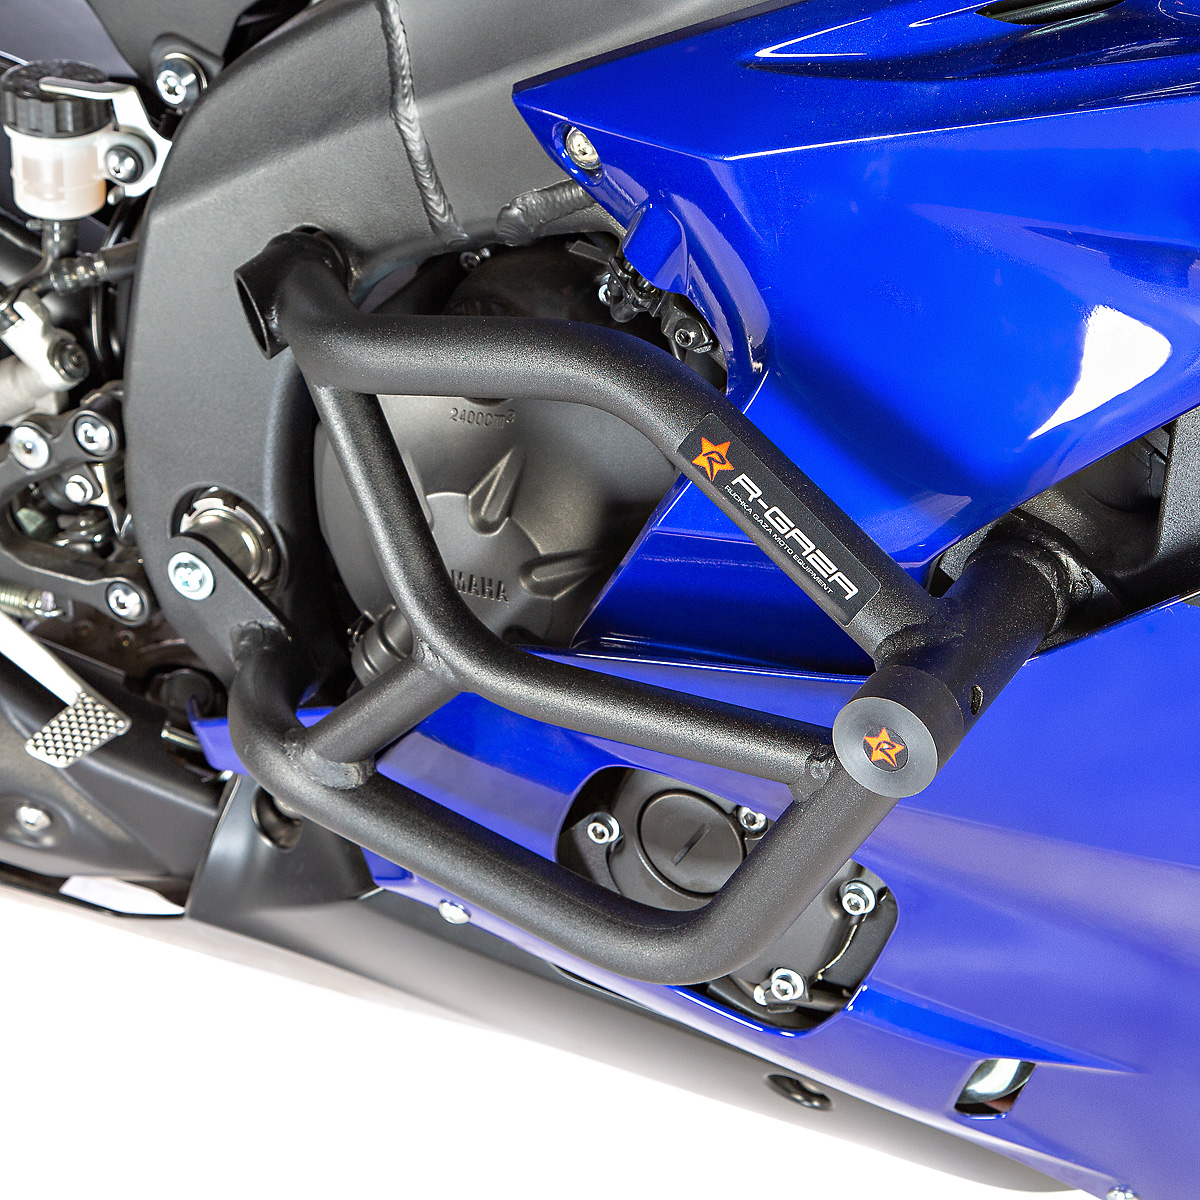 RG защитная клетка и race rail для Yamaha R6